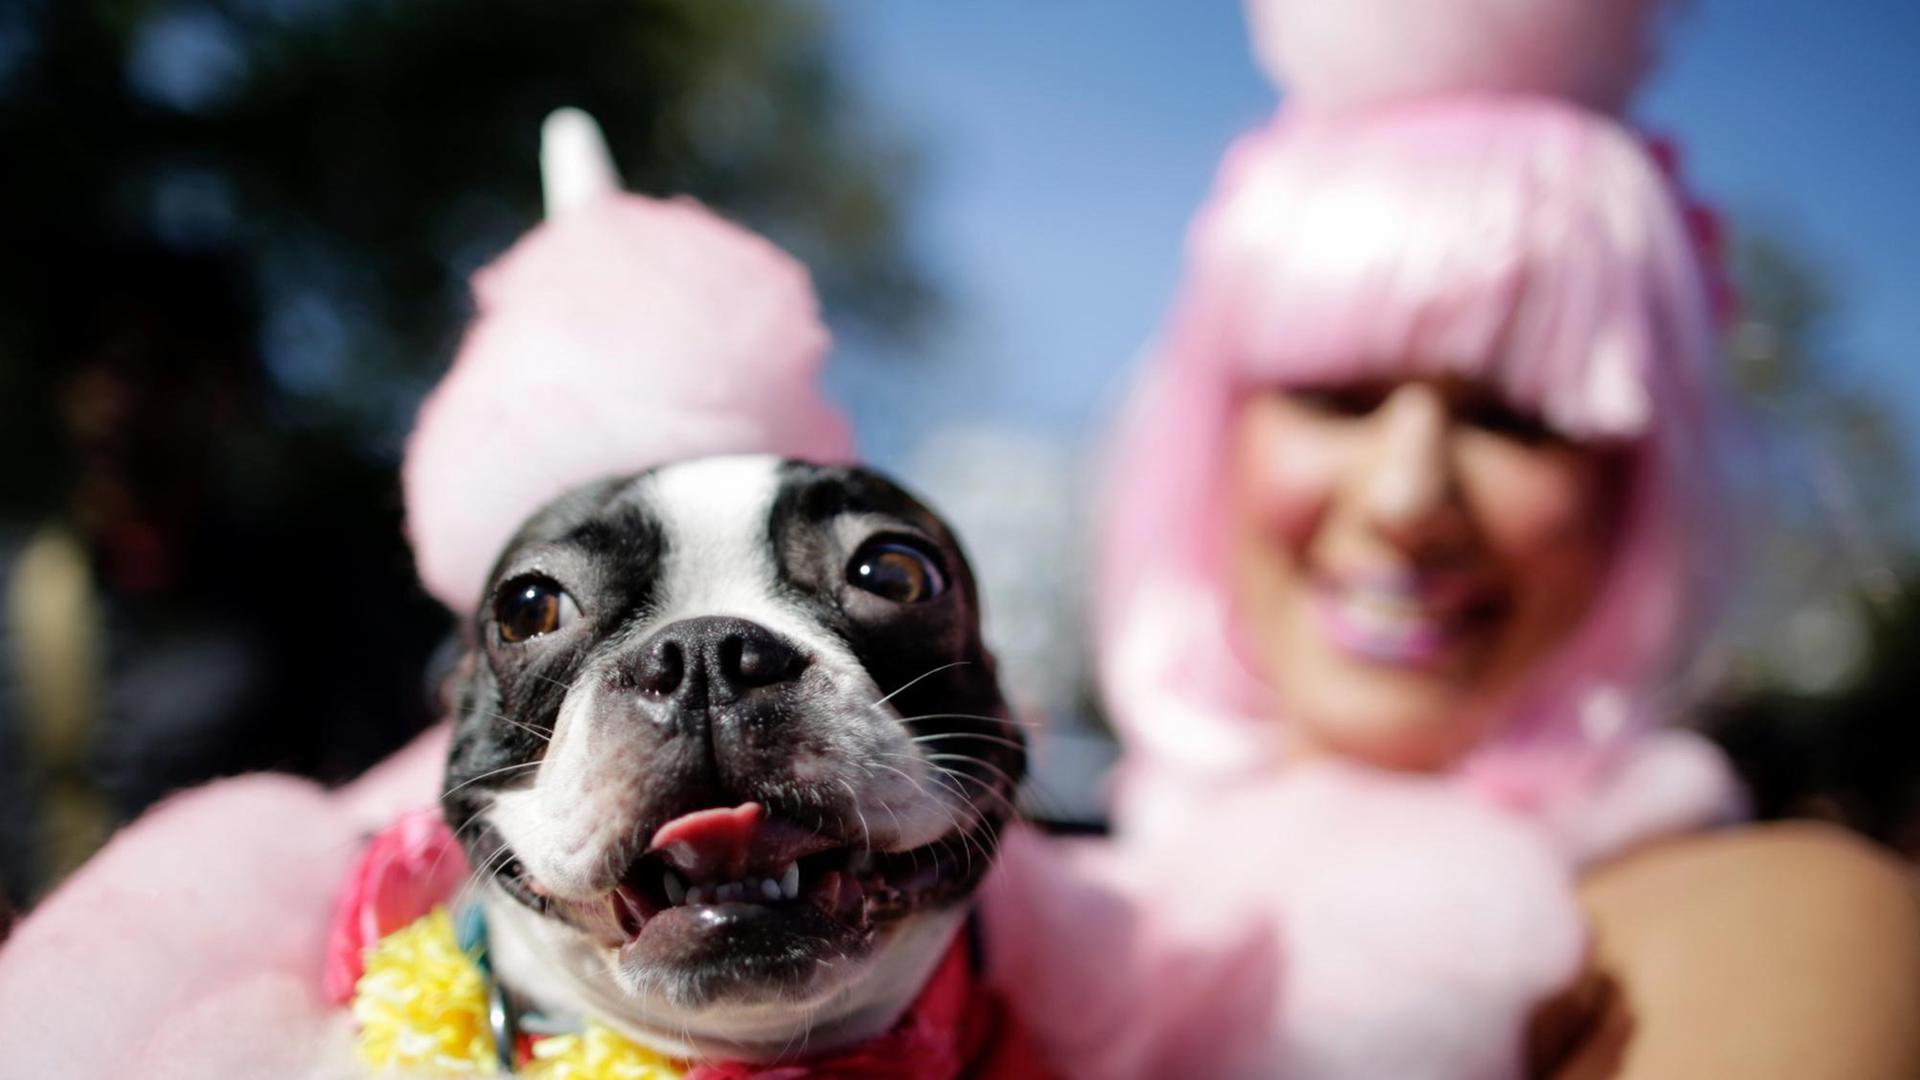 Ein Hund auf dem Arm seiner Besitzerin in einem aufeinander abgestimmten, rosa Kostüm.